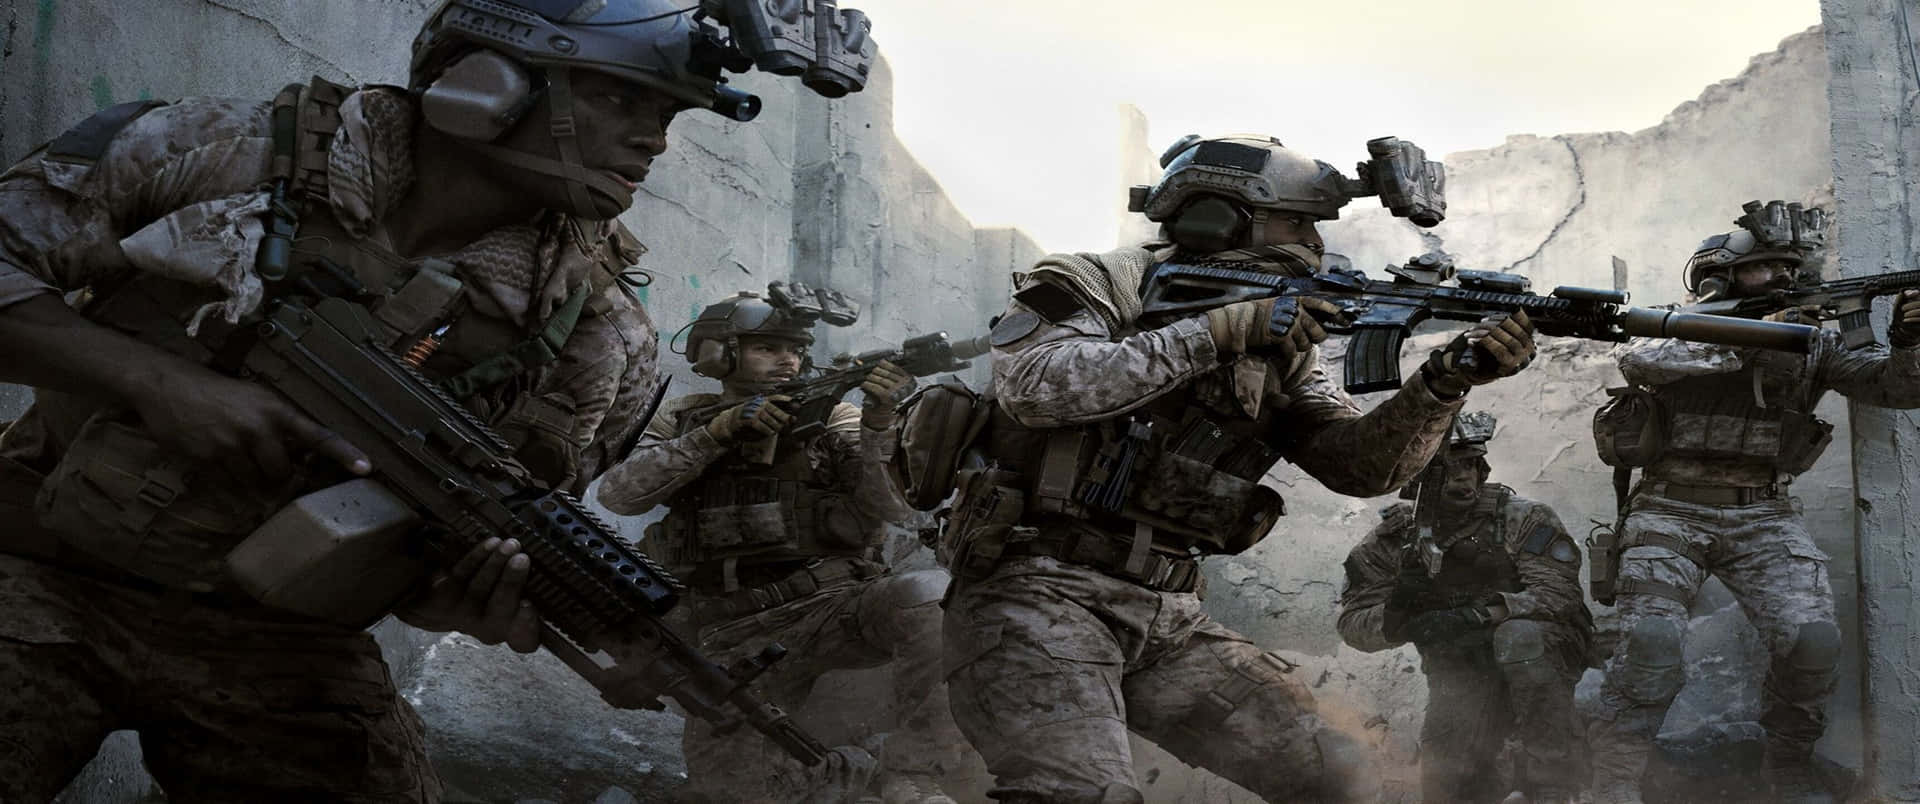 Ocultandoa Los Soldados Fondo De Pantalla Call Of Duty Modern Warfare 3440x1440p